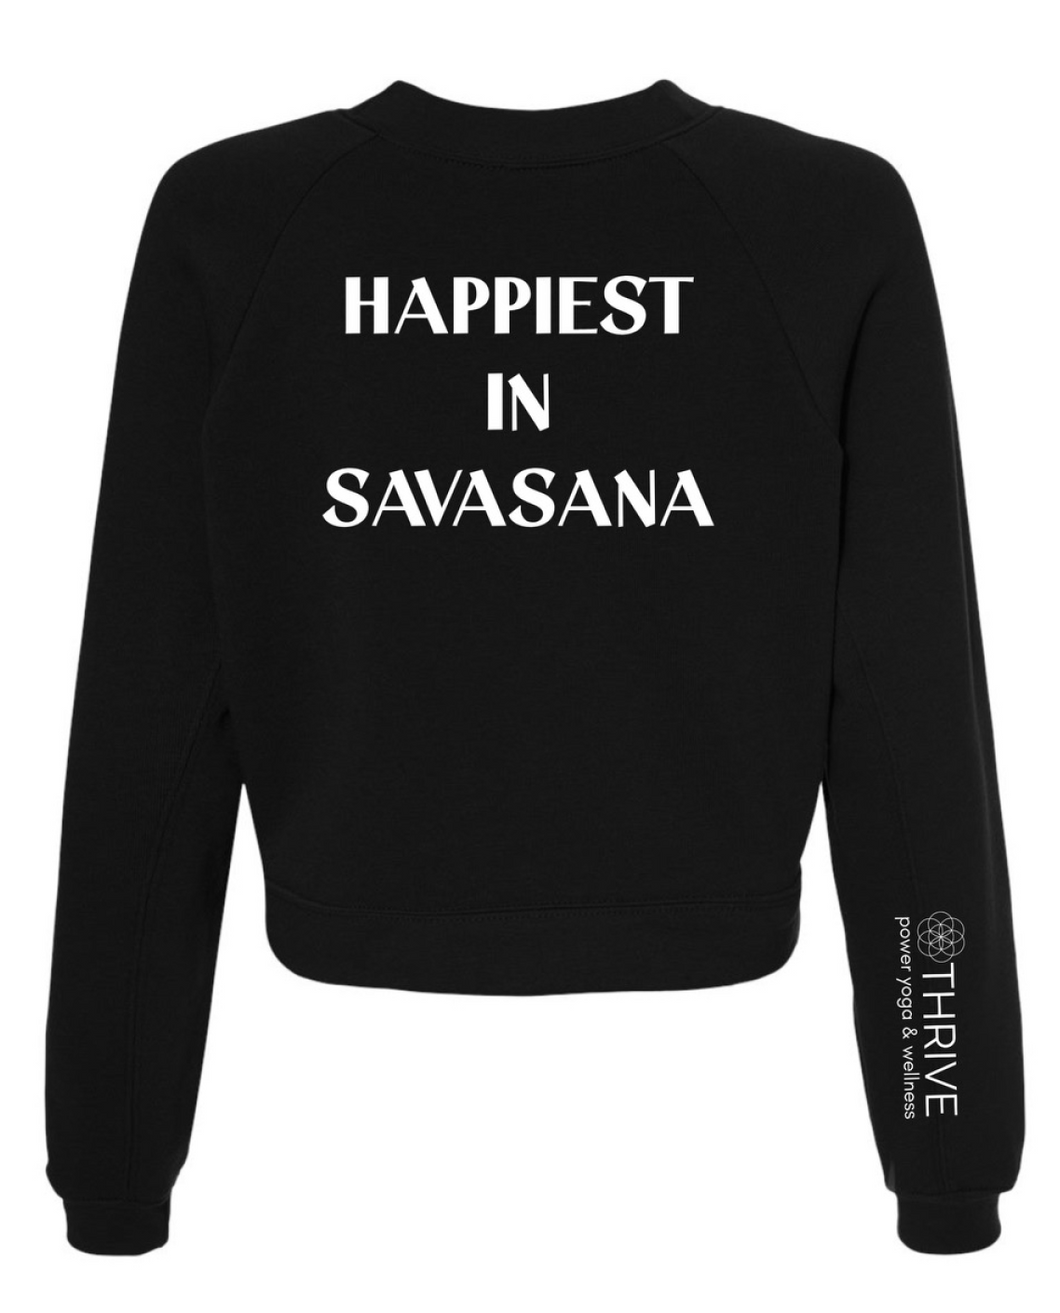 Happiest Here Sweatshirt